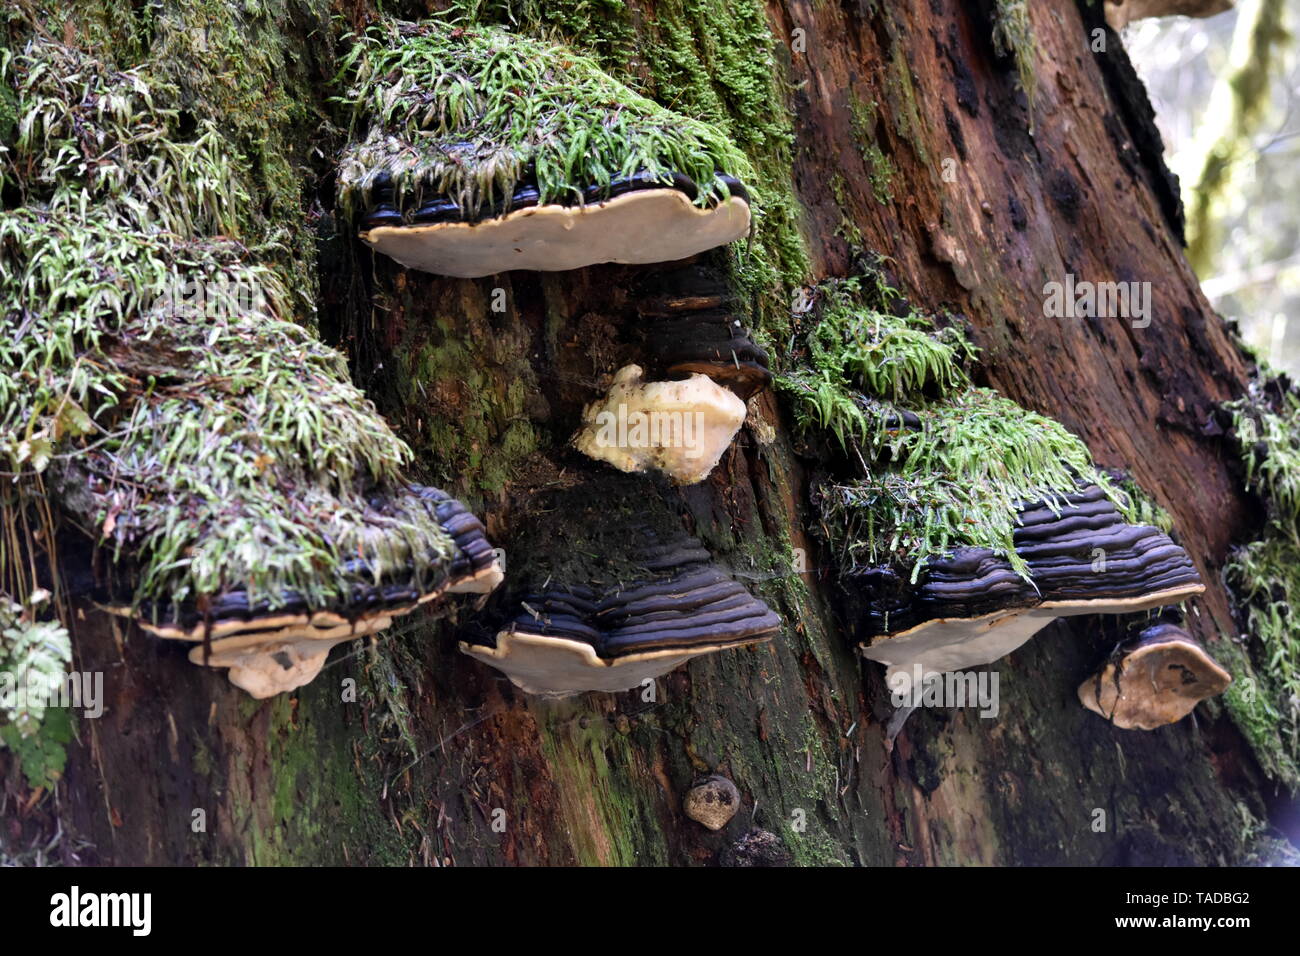 Photographie de ceinture rouge conk champignons poussant sur des arbres dans une forêt tropicale humide Banque D'Images